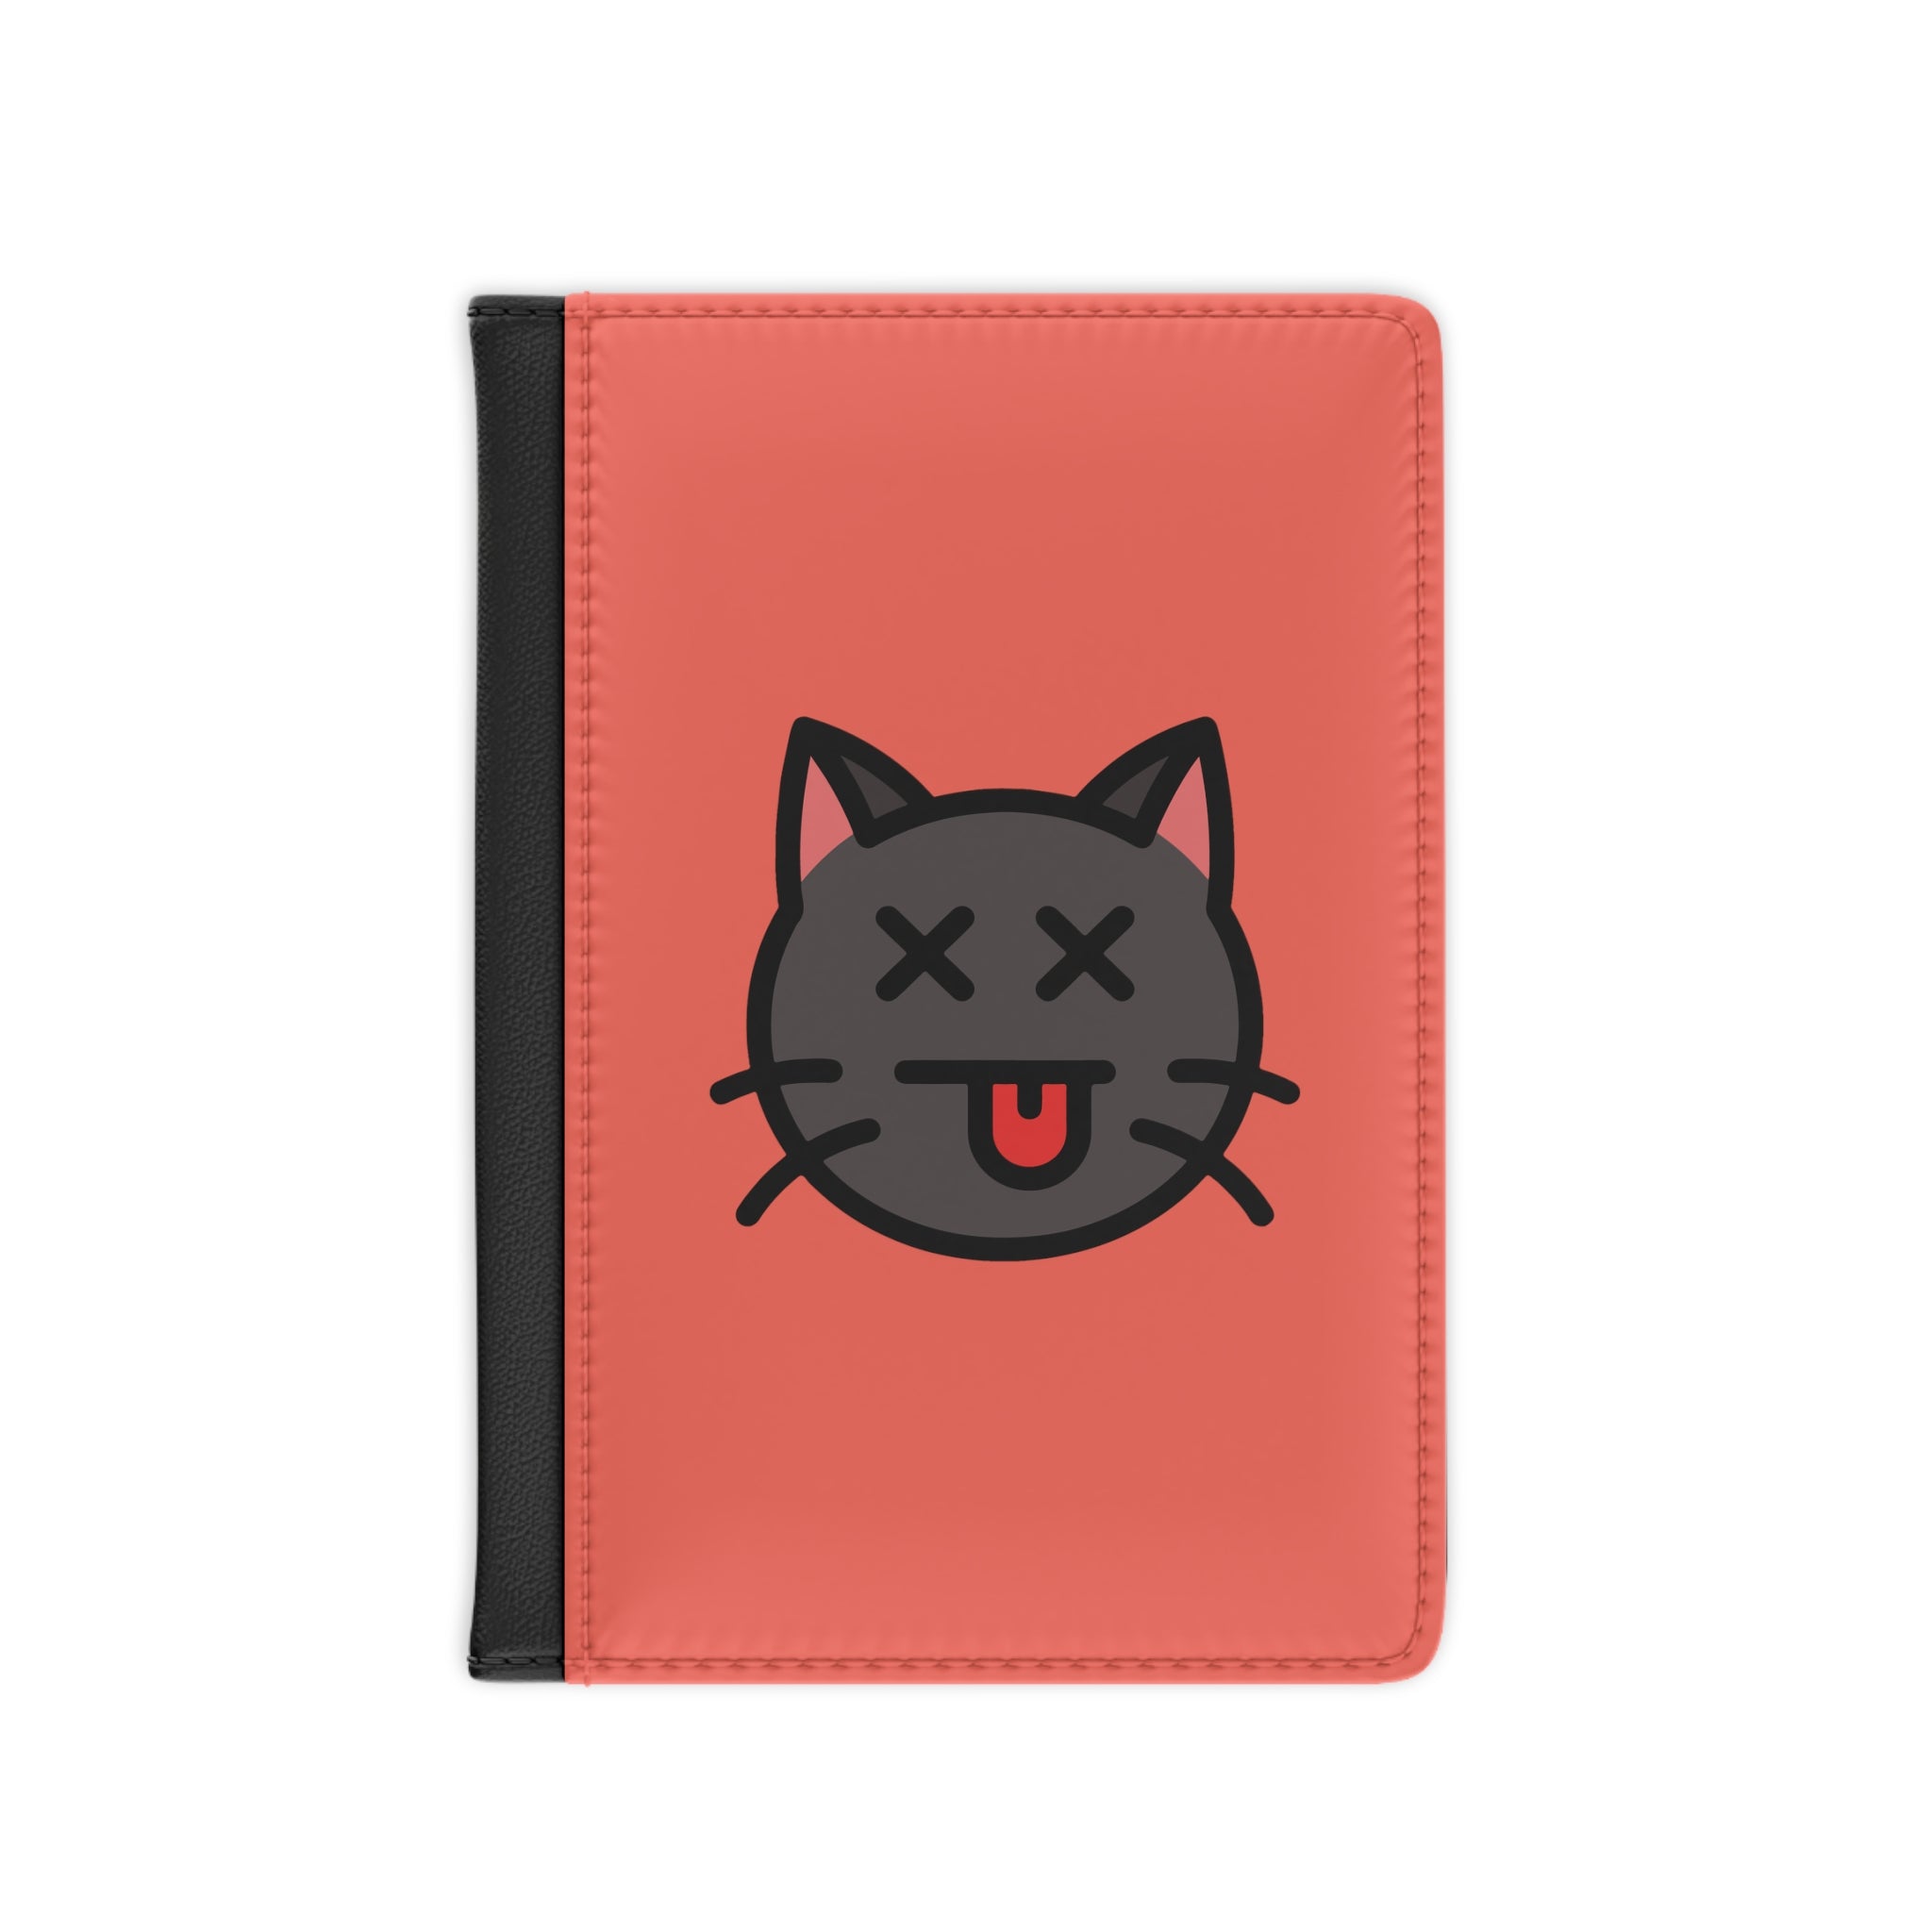 Shocked Cat Emoji Passport Cover